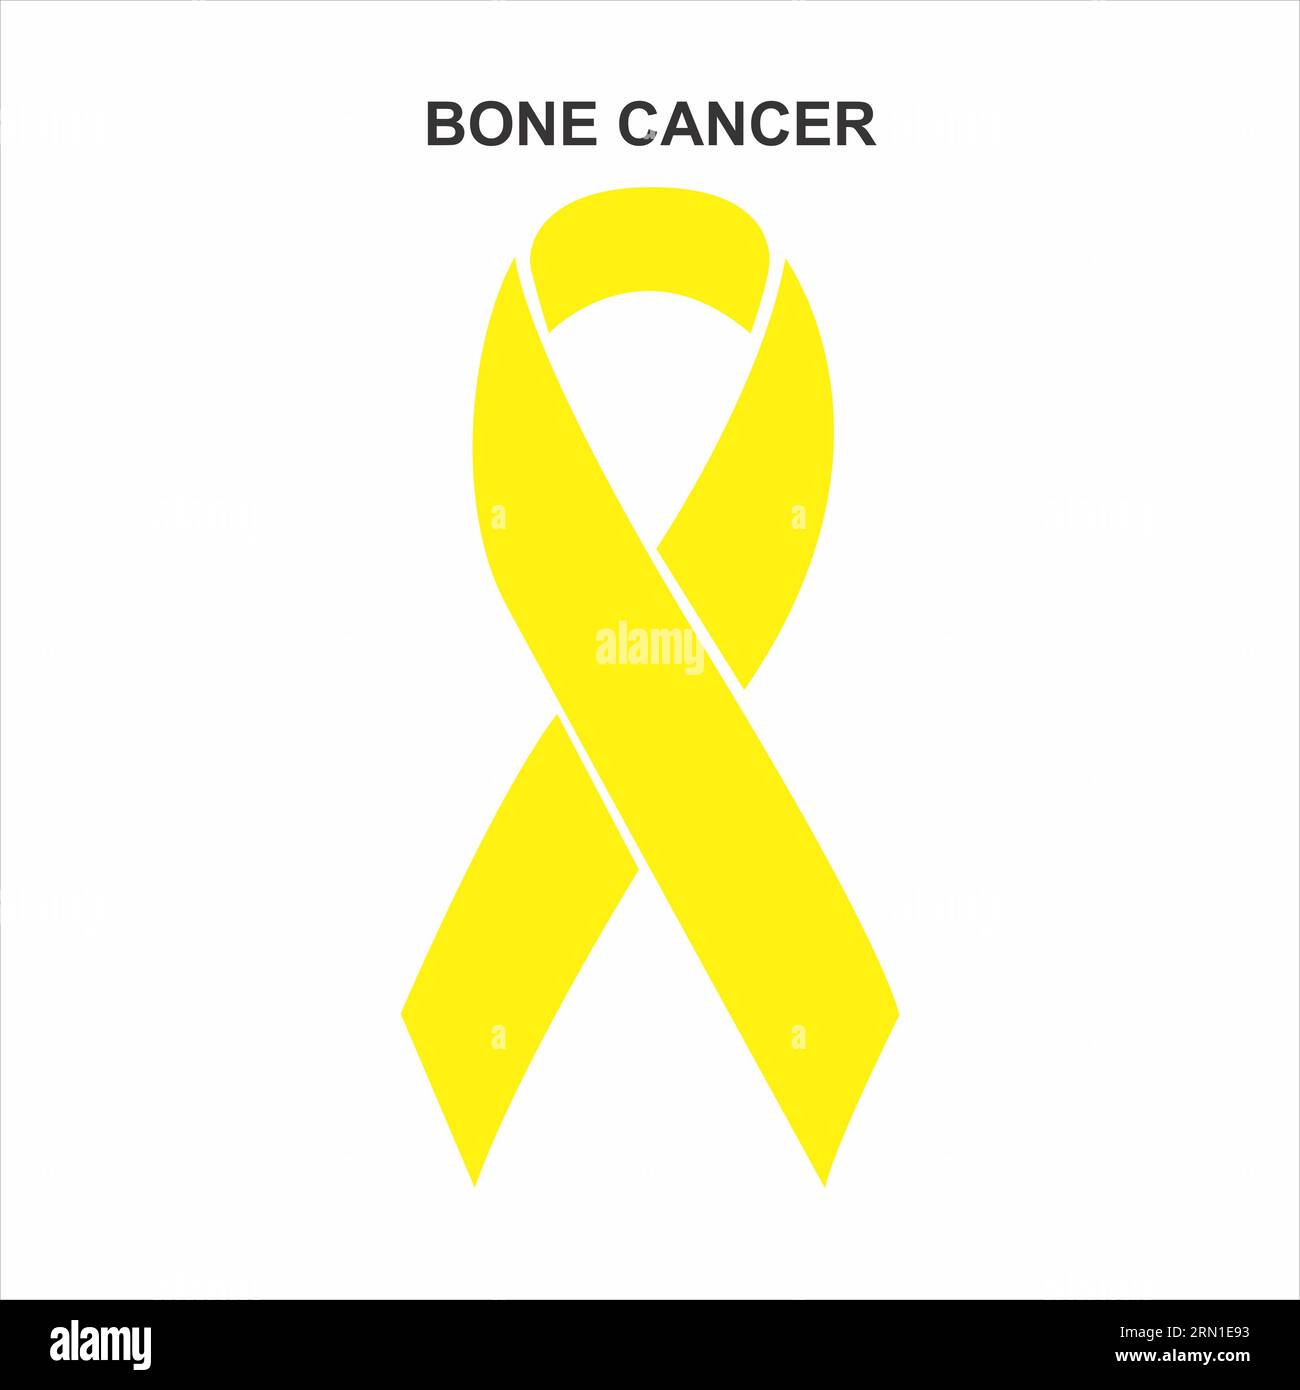 Illustrazione del nastro del cancro osseo Foto Stock